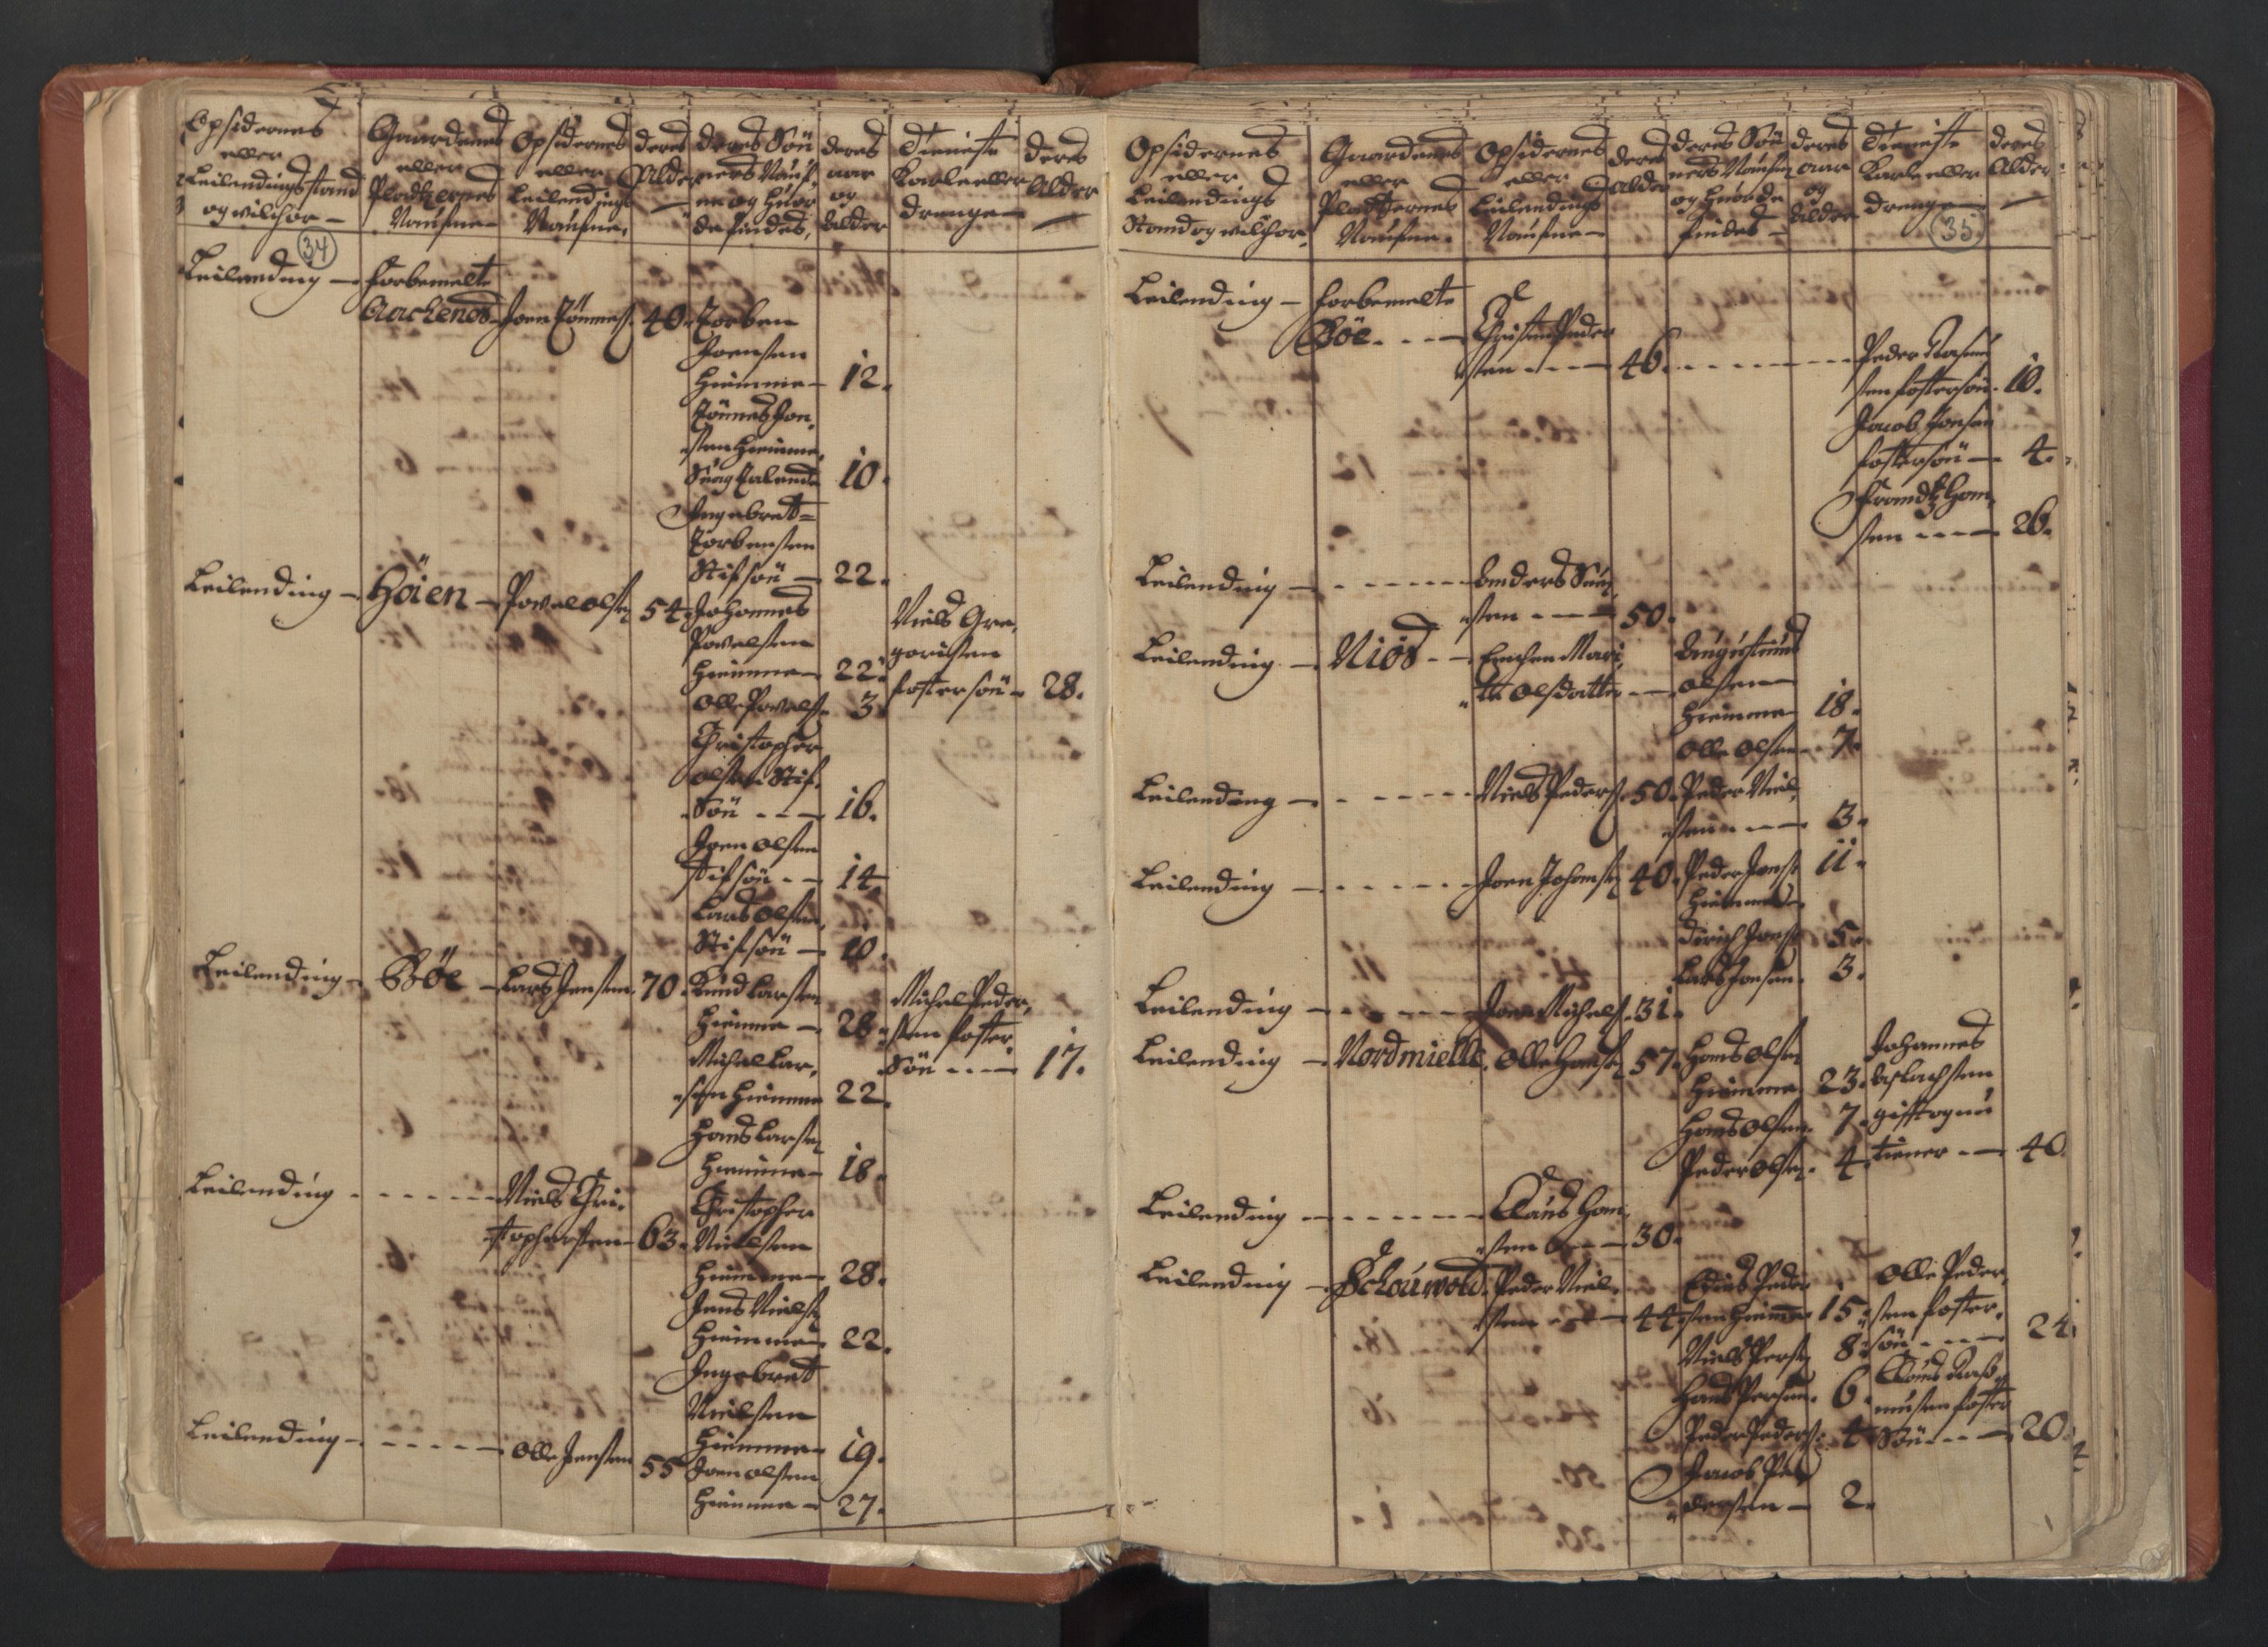 RA, Census (manntall) 1701, no. 18: Vesterålen, Andenes and Lofoten fogderi, 1701, p. 34-35